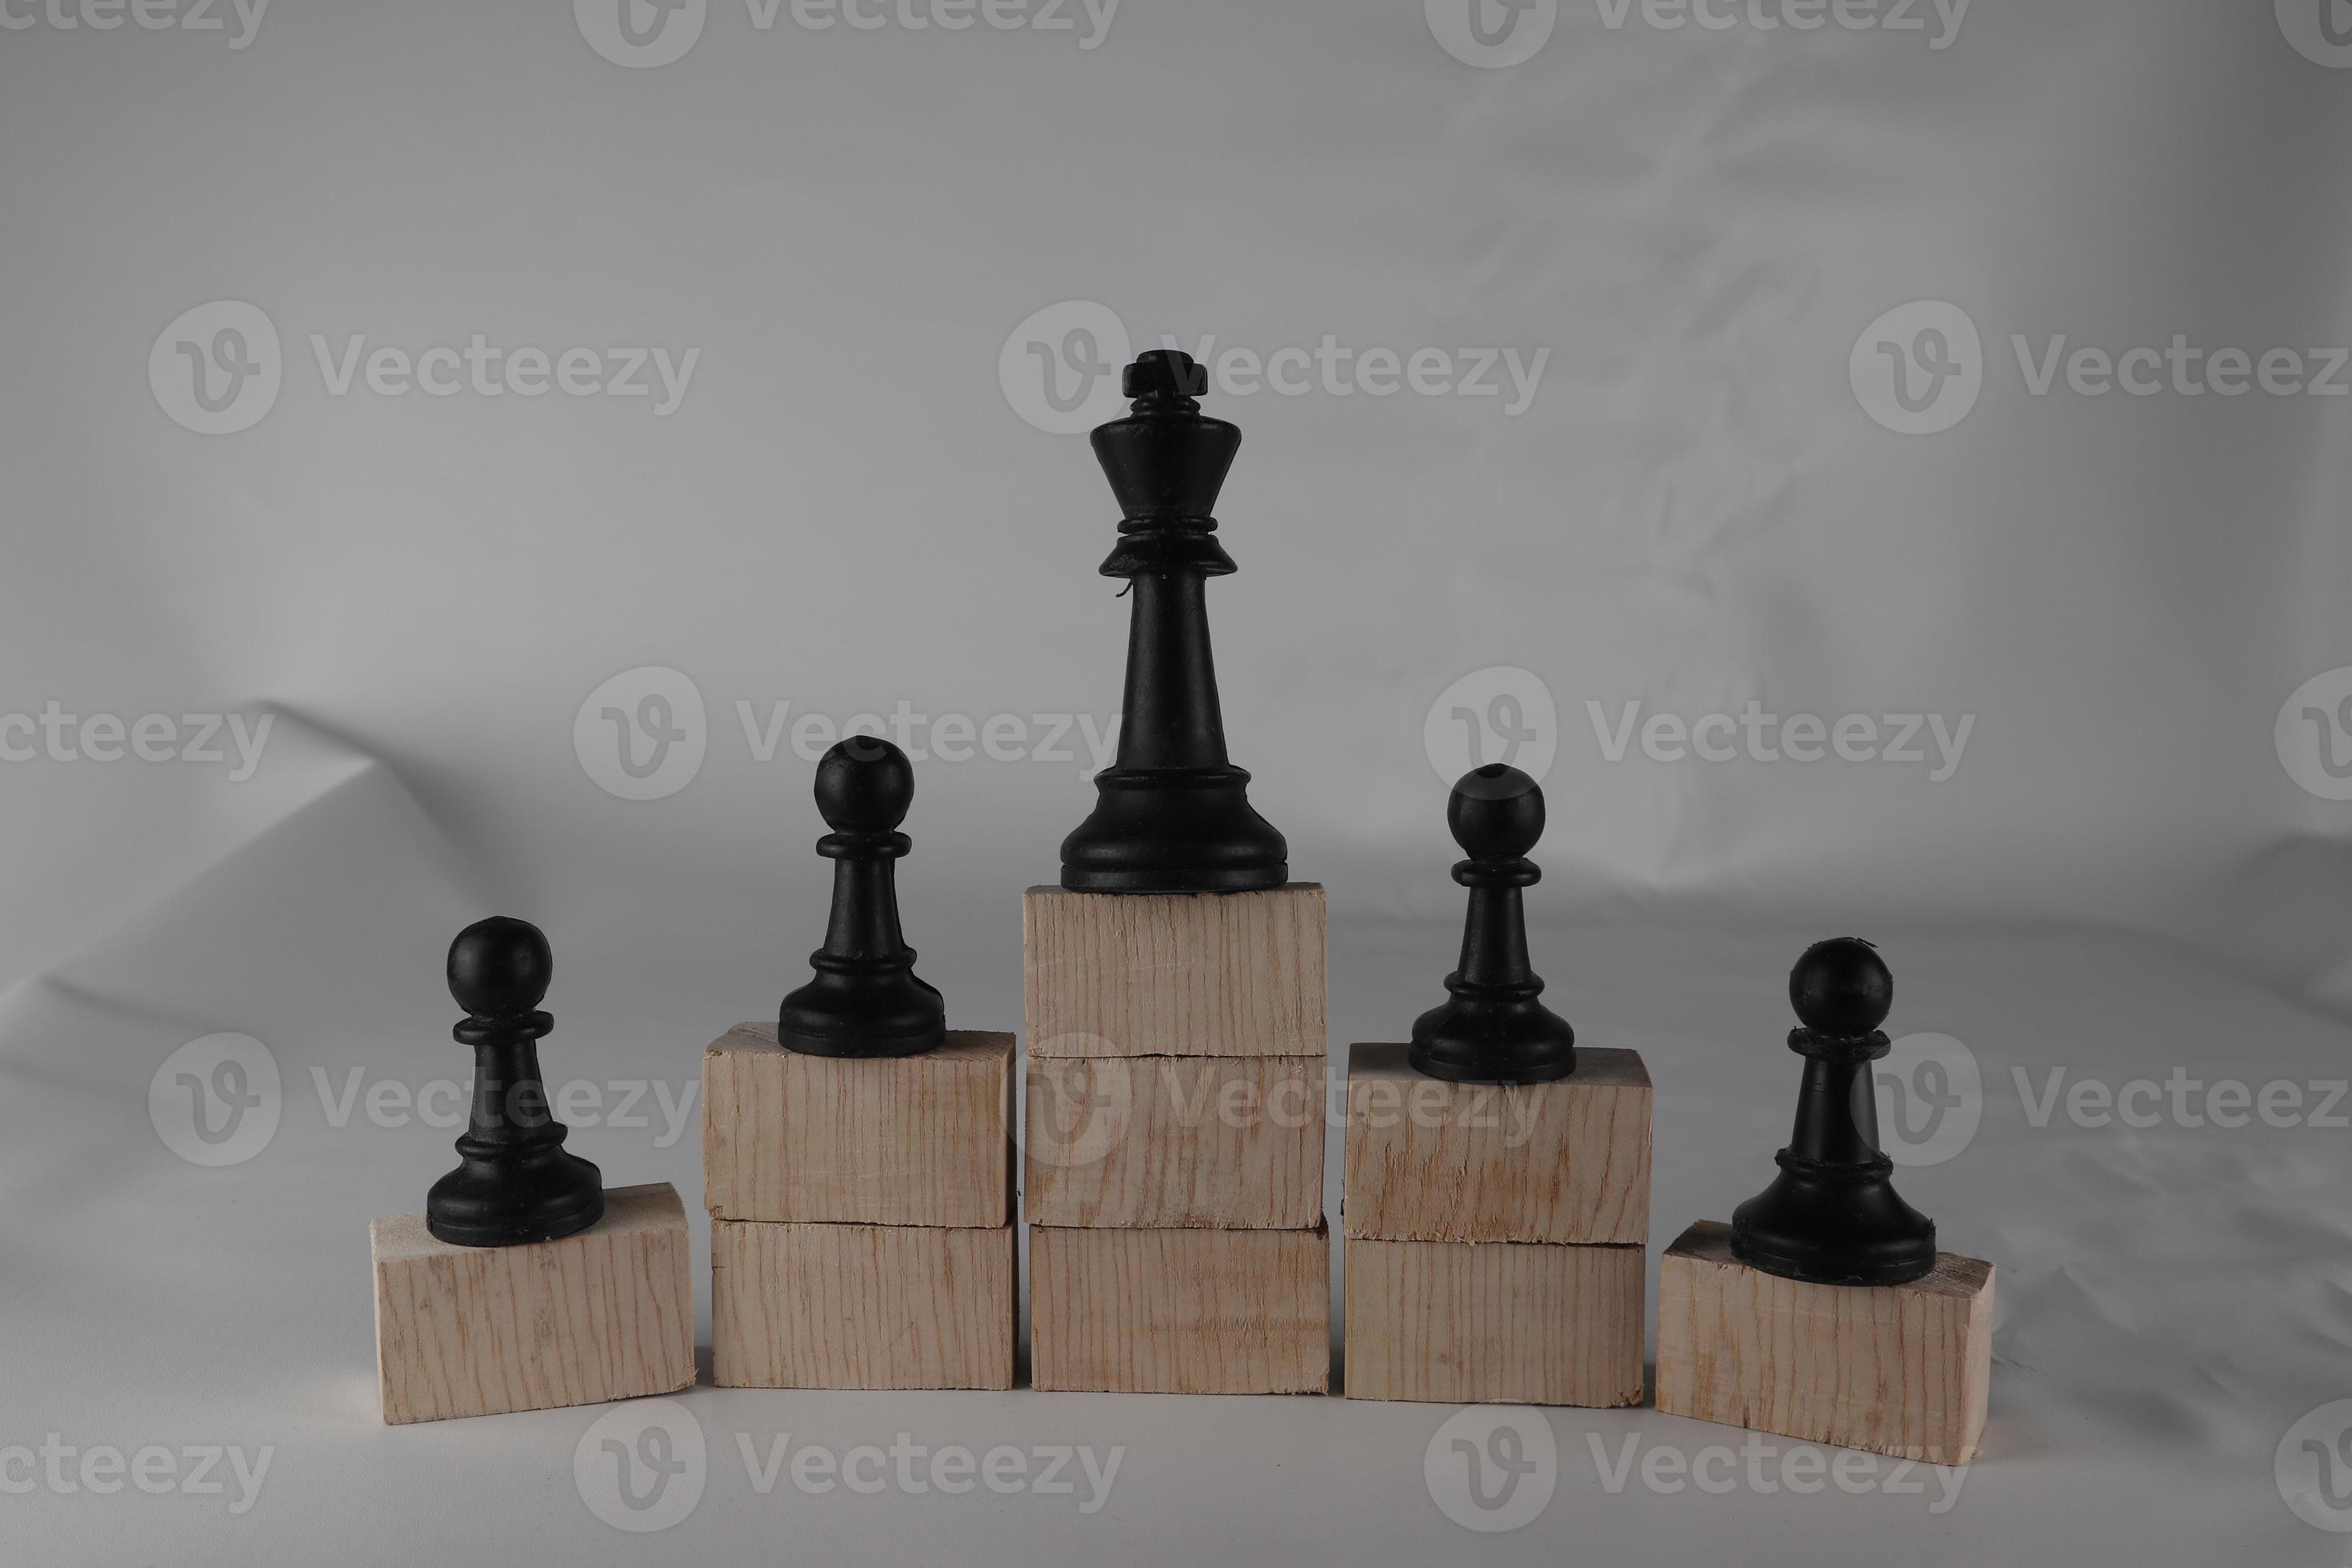 peão de xadrez na parte inferior e uma rainha de xadrez no topo